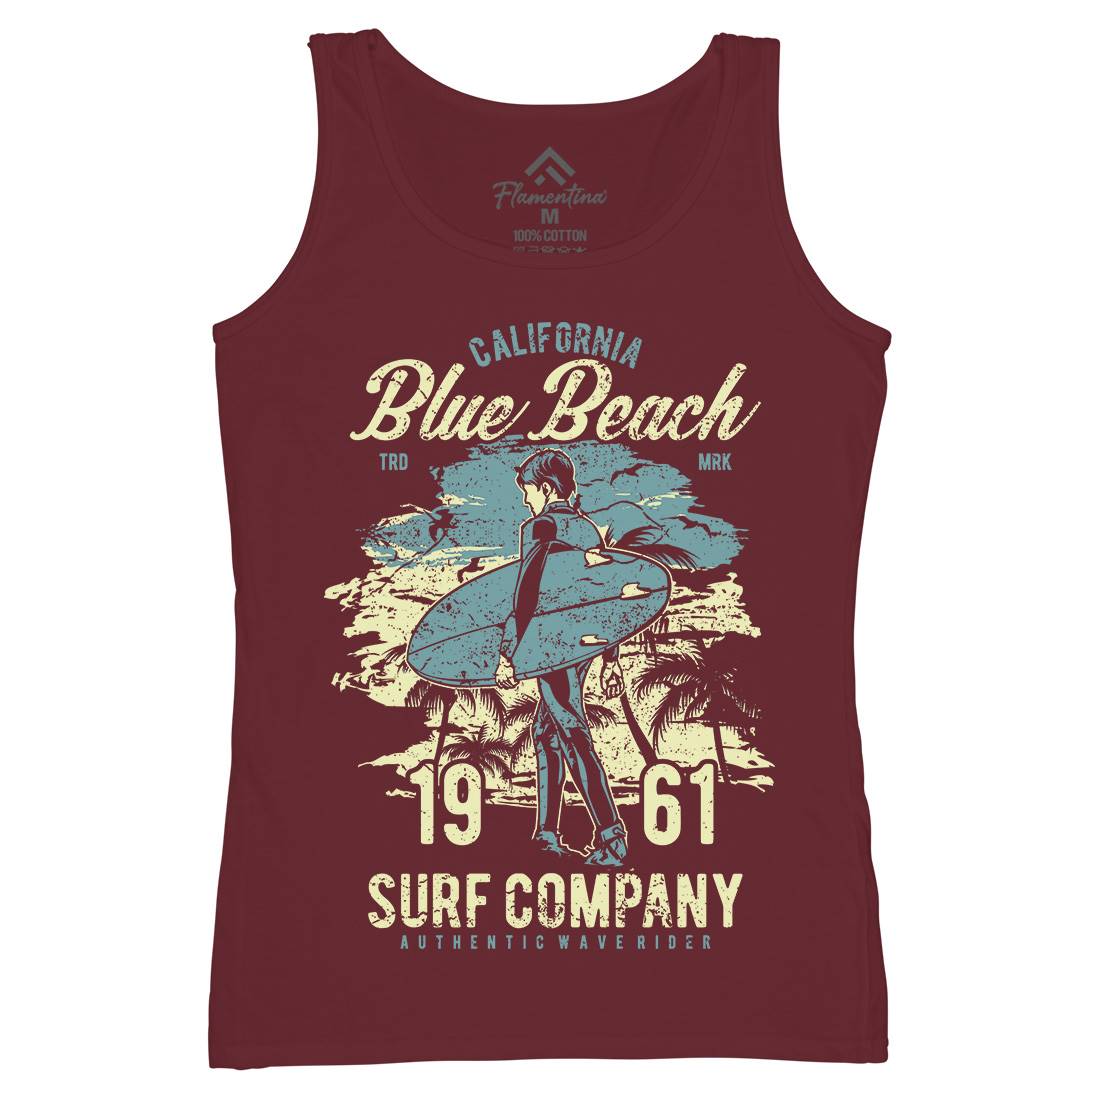 Blue Beach Womens Organic Tank Top Vest Surf A621